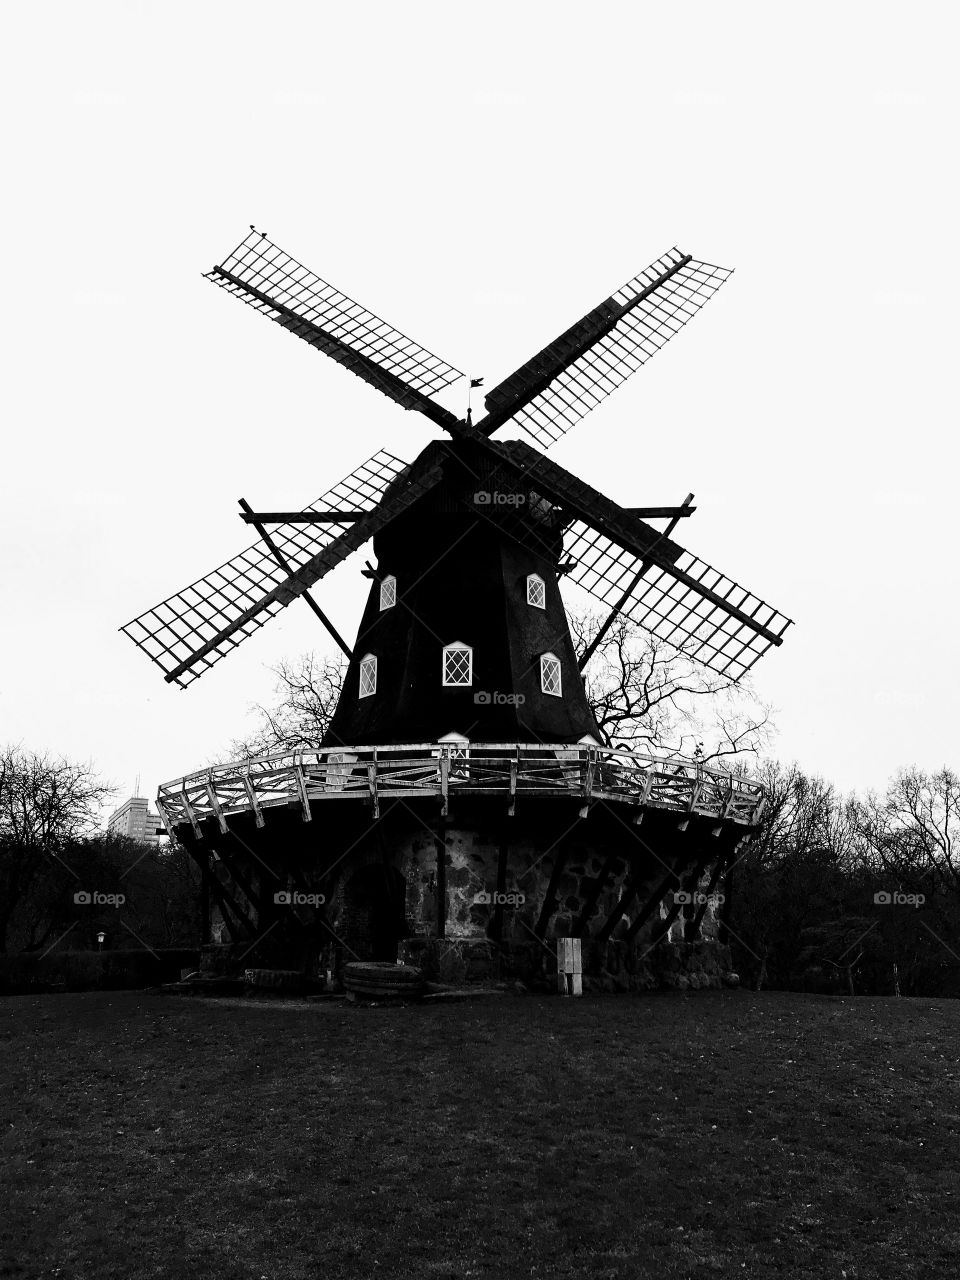 Malmö’s Windmill